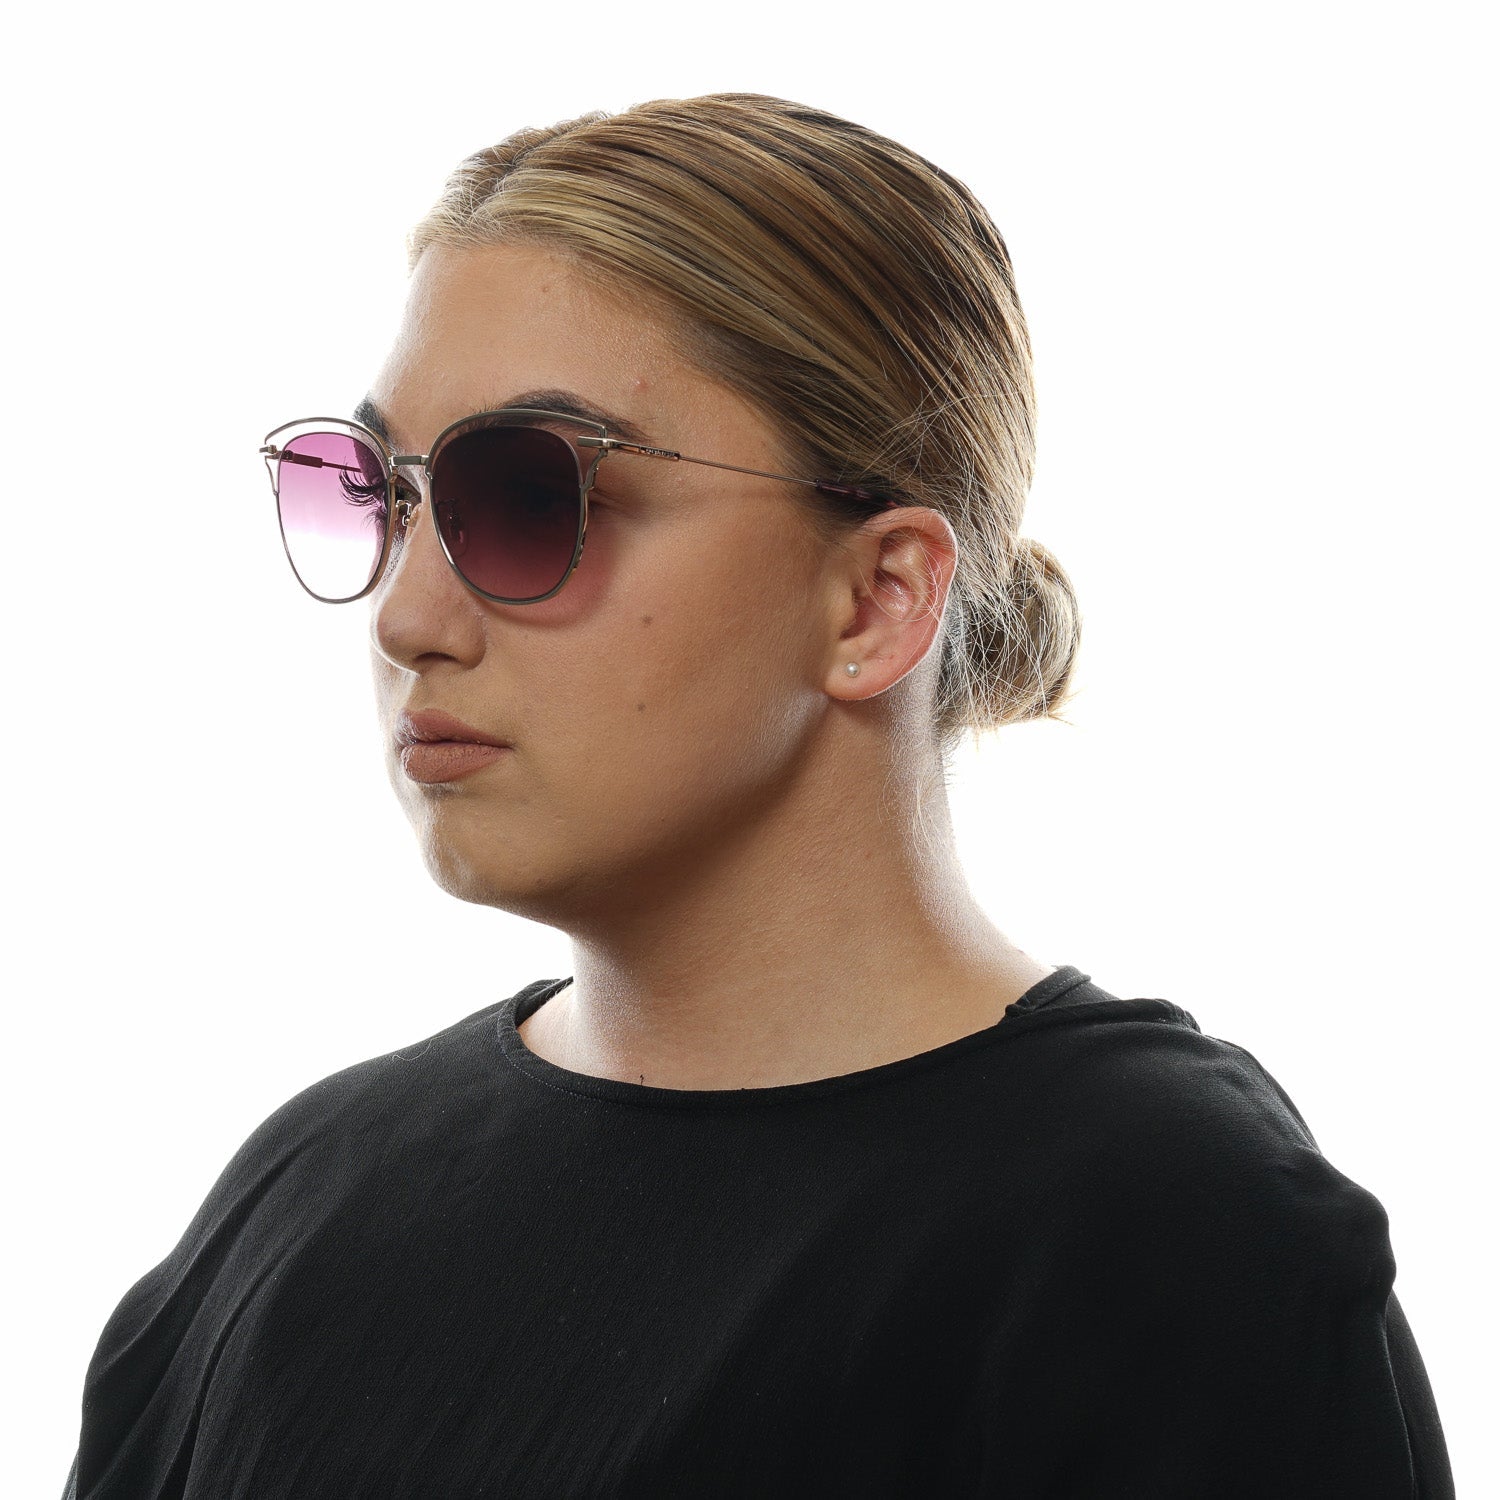 Police Burgundy Sunglasses for Woman - Fizigo